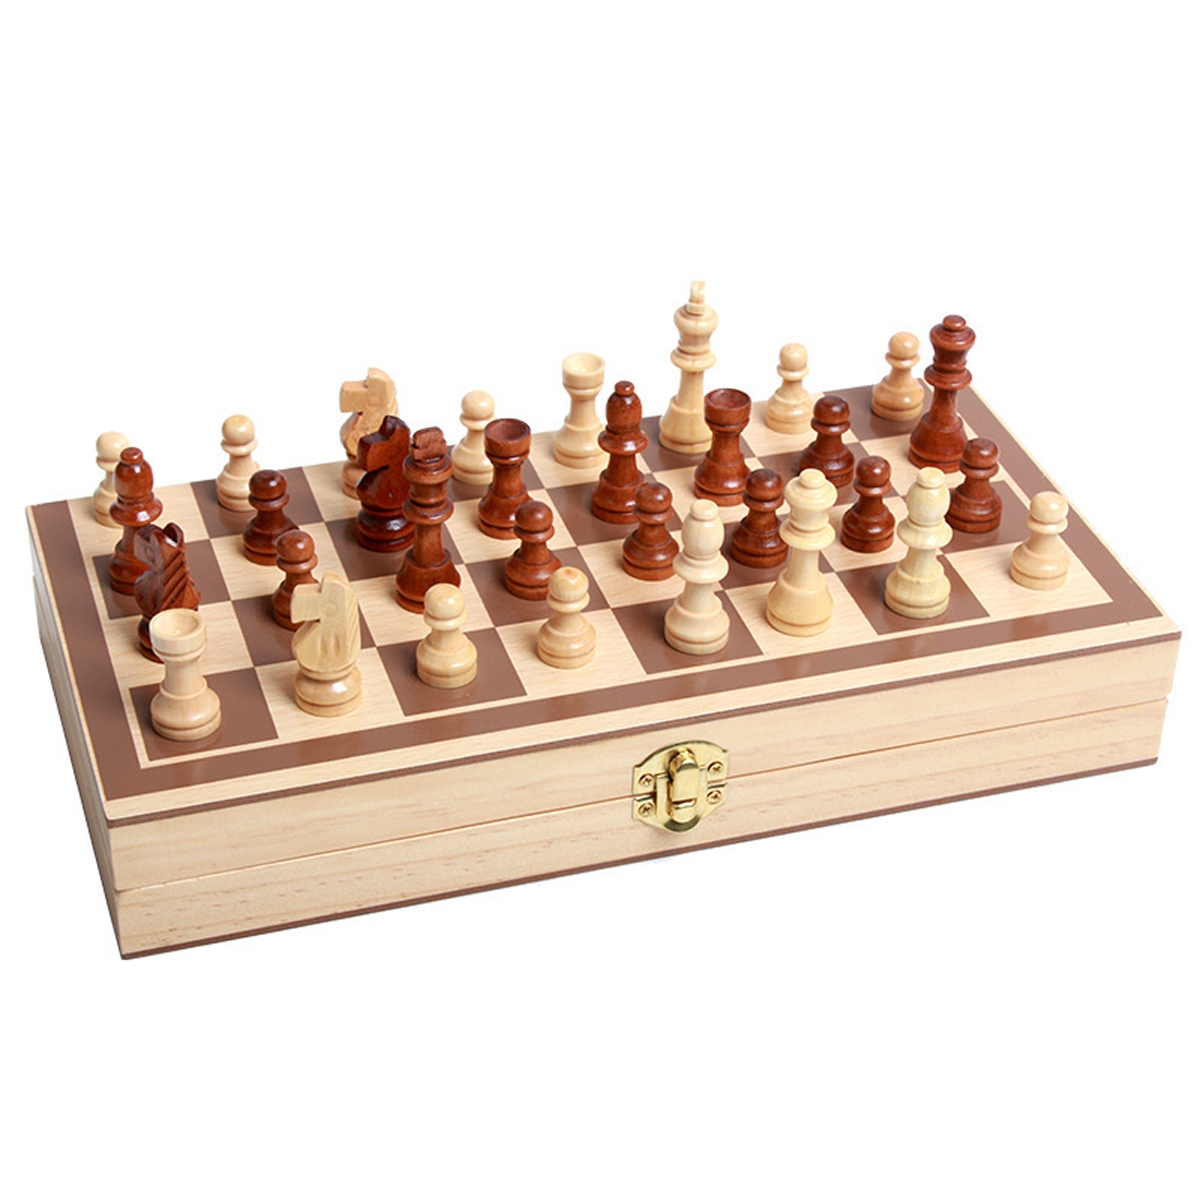 Σκάκι ξύλινο ταξιδίου 25Χ25εκ.